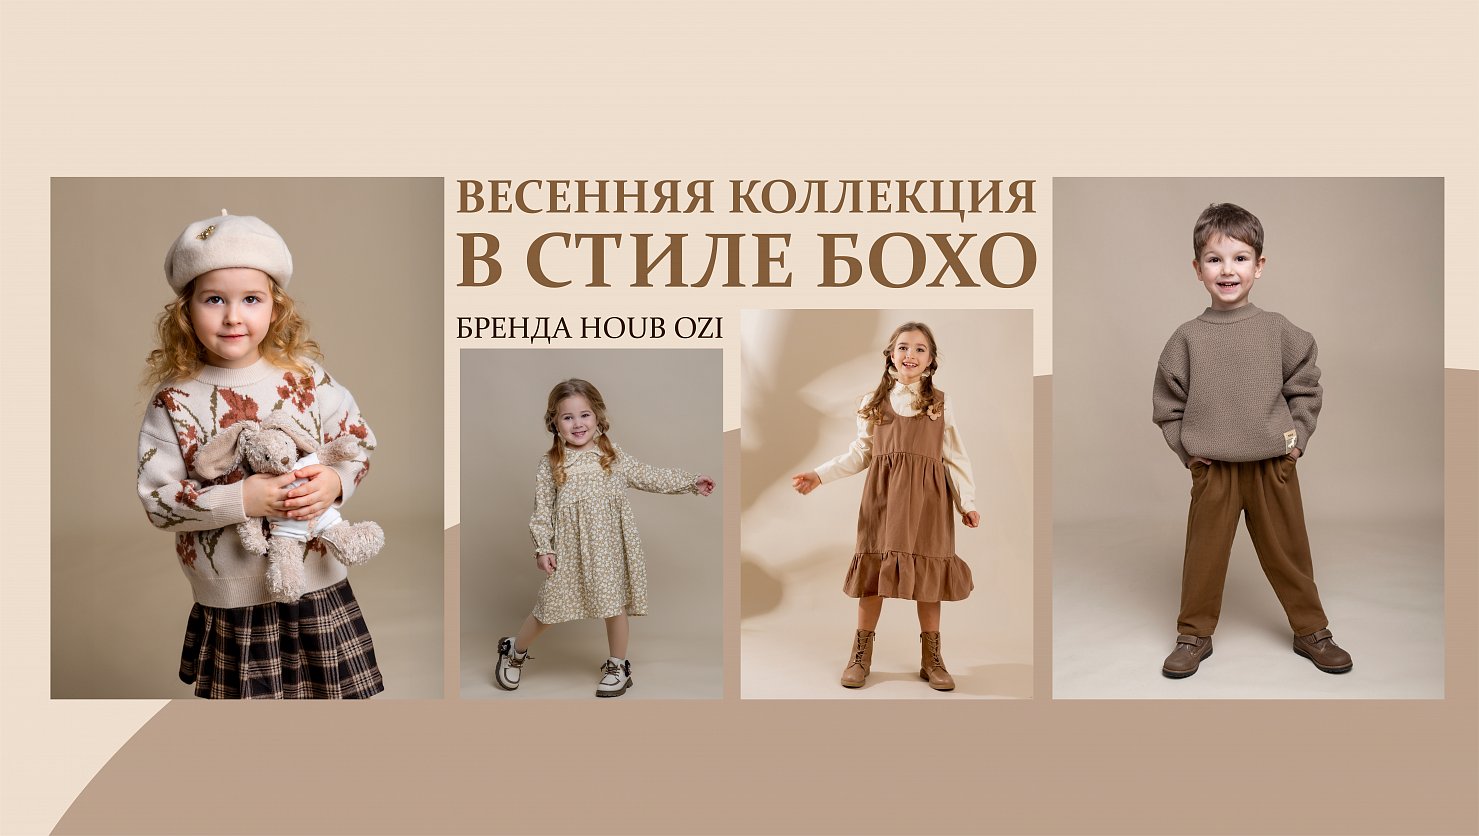 НАСЛЕДНИКЪ ВЫЖАНОВА» - магазин товаров для детей и мам. Купить детские  товары в интернет-магазине в Москве